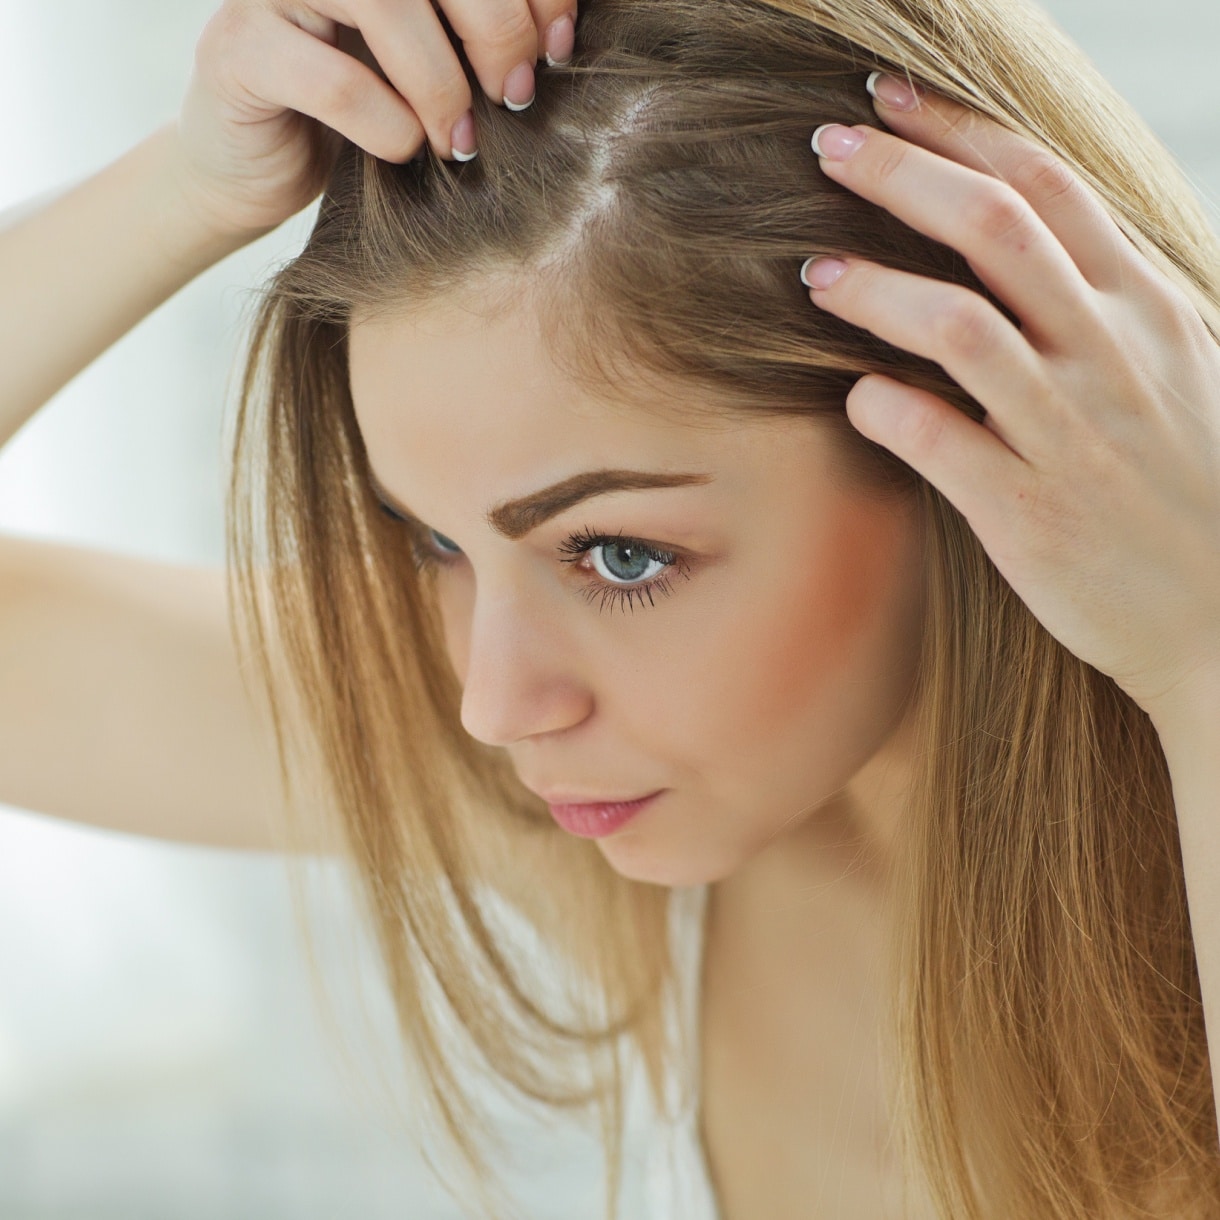 Perte de cheveux : causes et traitements | chute de cheveux, anti chute cheveux | Centre MAAP | Paris